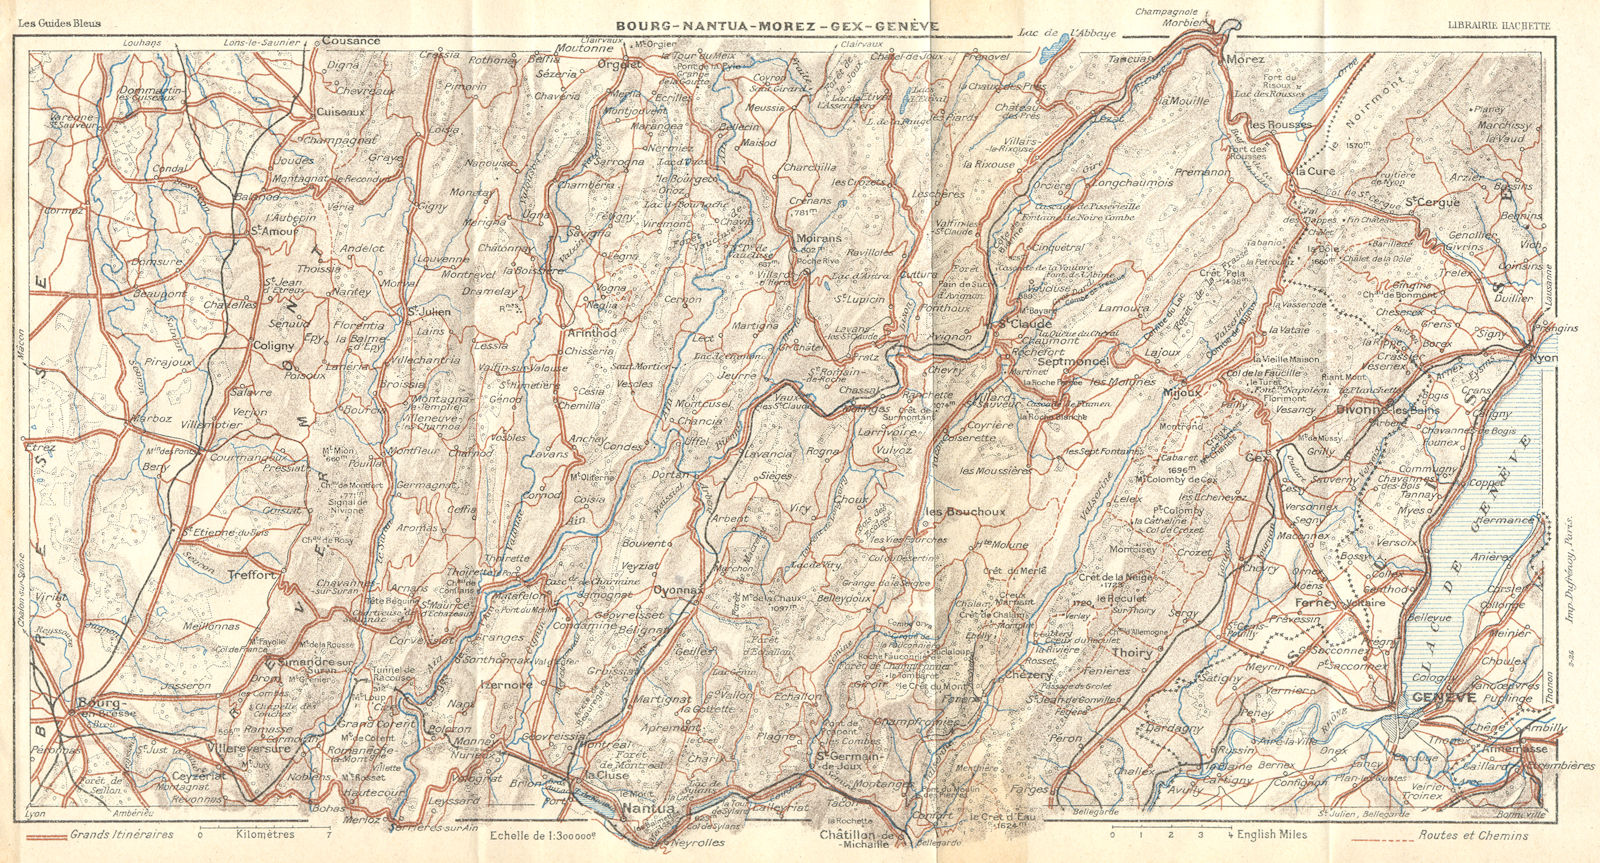 FRANCE. Bourg-Nantua-Morez-Gex-Genève(Geneva) 1924 old vintage map plan chart